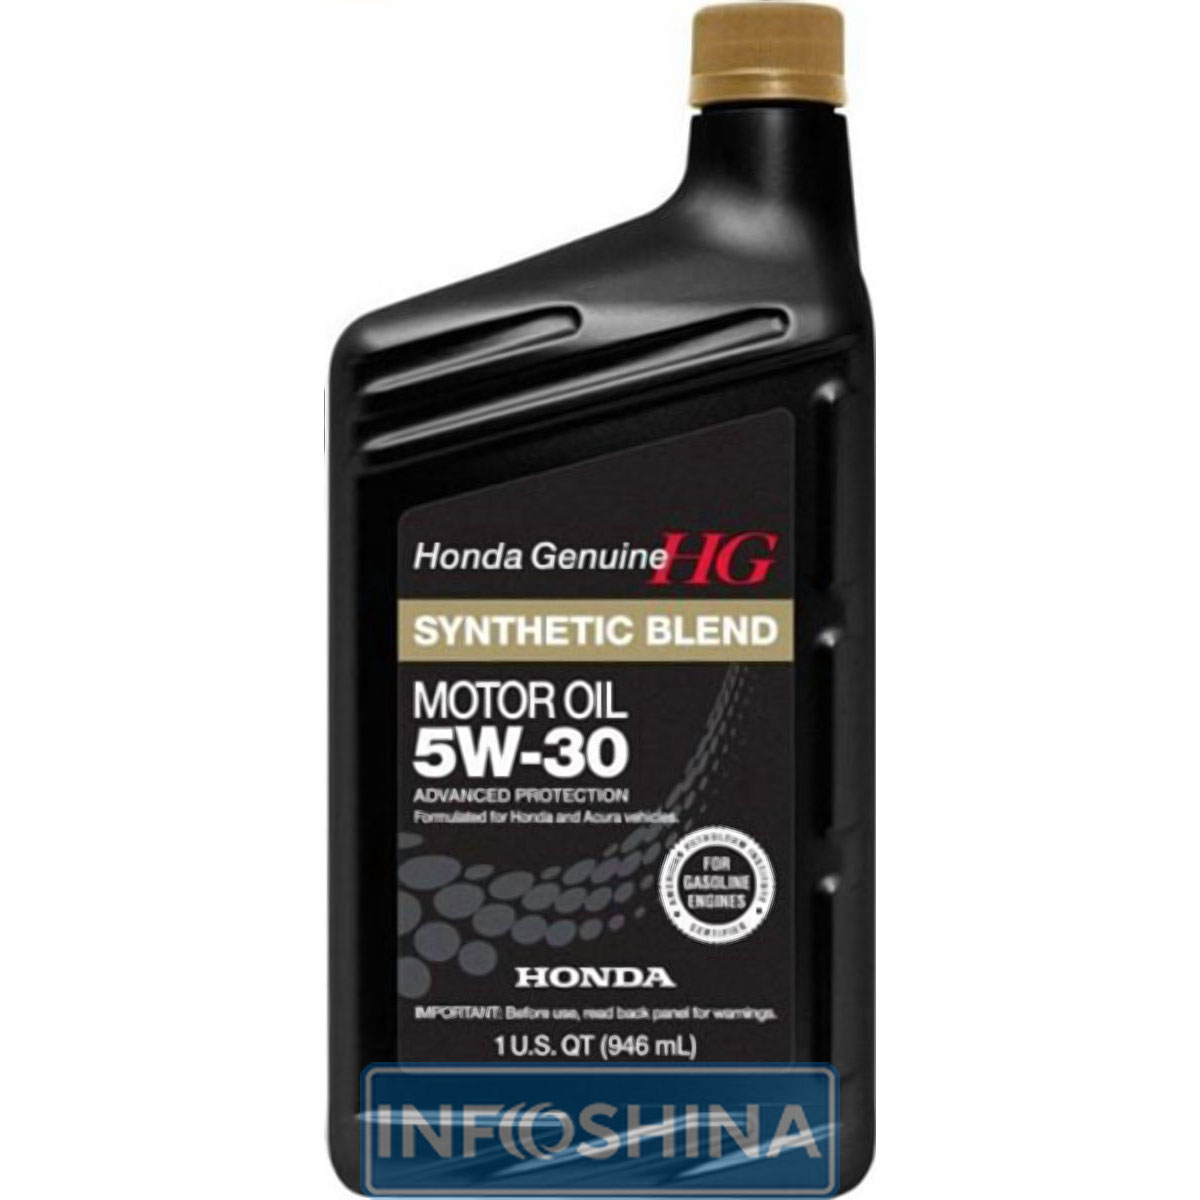 Купить масло Honda Synthetic Blend 5W-30 (1л)